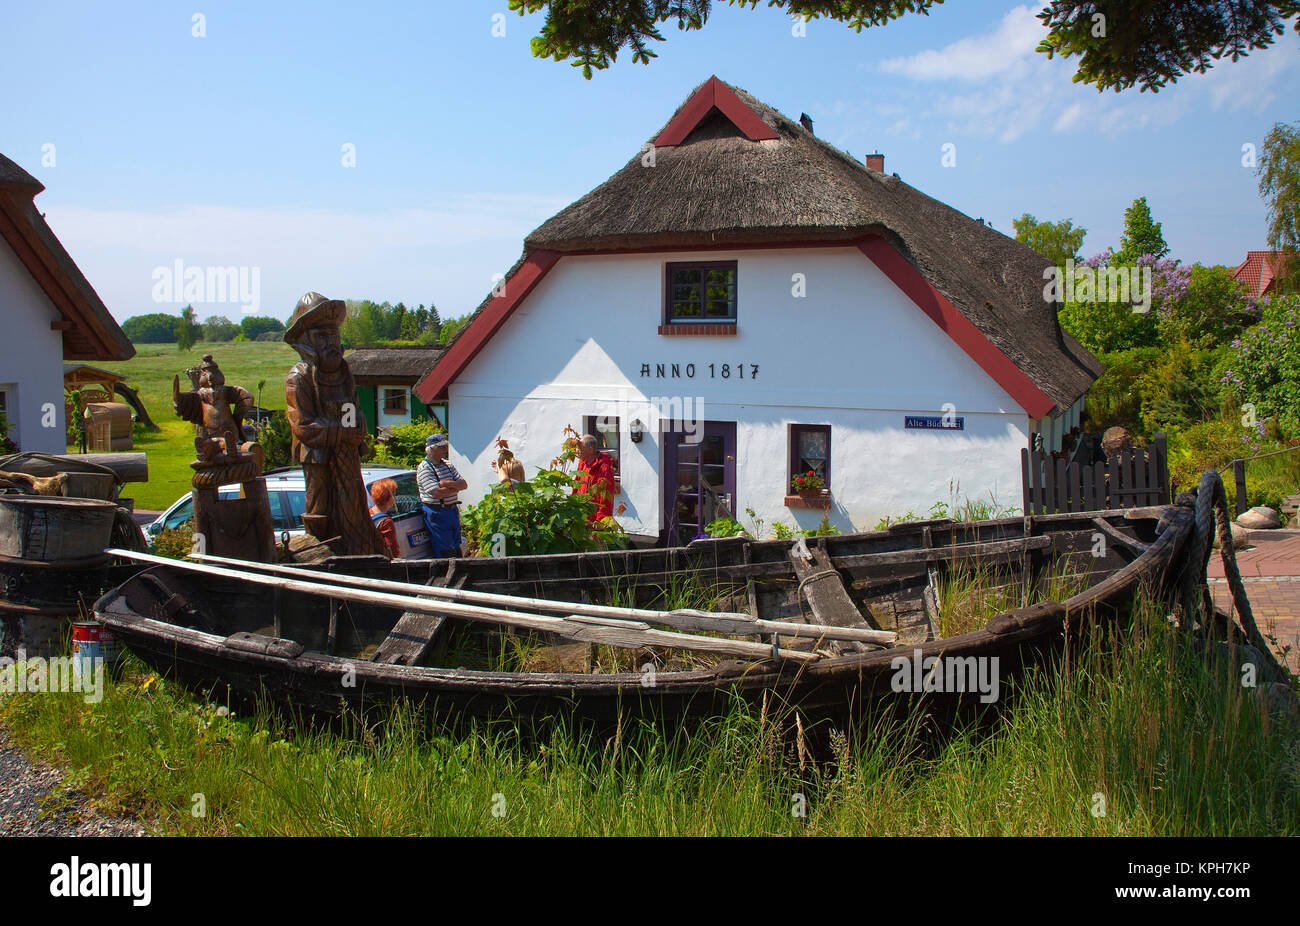 Fischerboot vor einem alten strohgedeckten Haus, Gross Zicker, Insel Rügen, Mecklenburg-Vorpommern, Ostsee, Deutschland, Europa Stockfoto